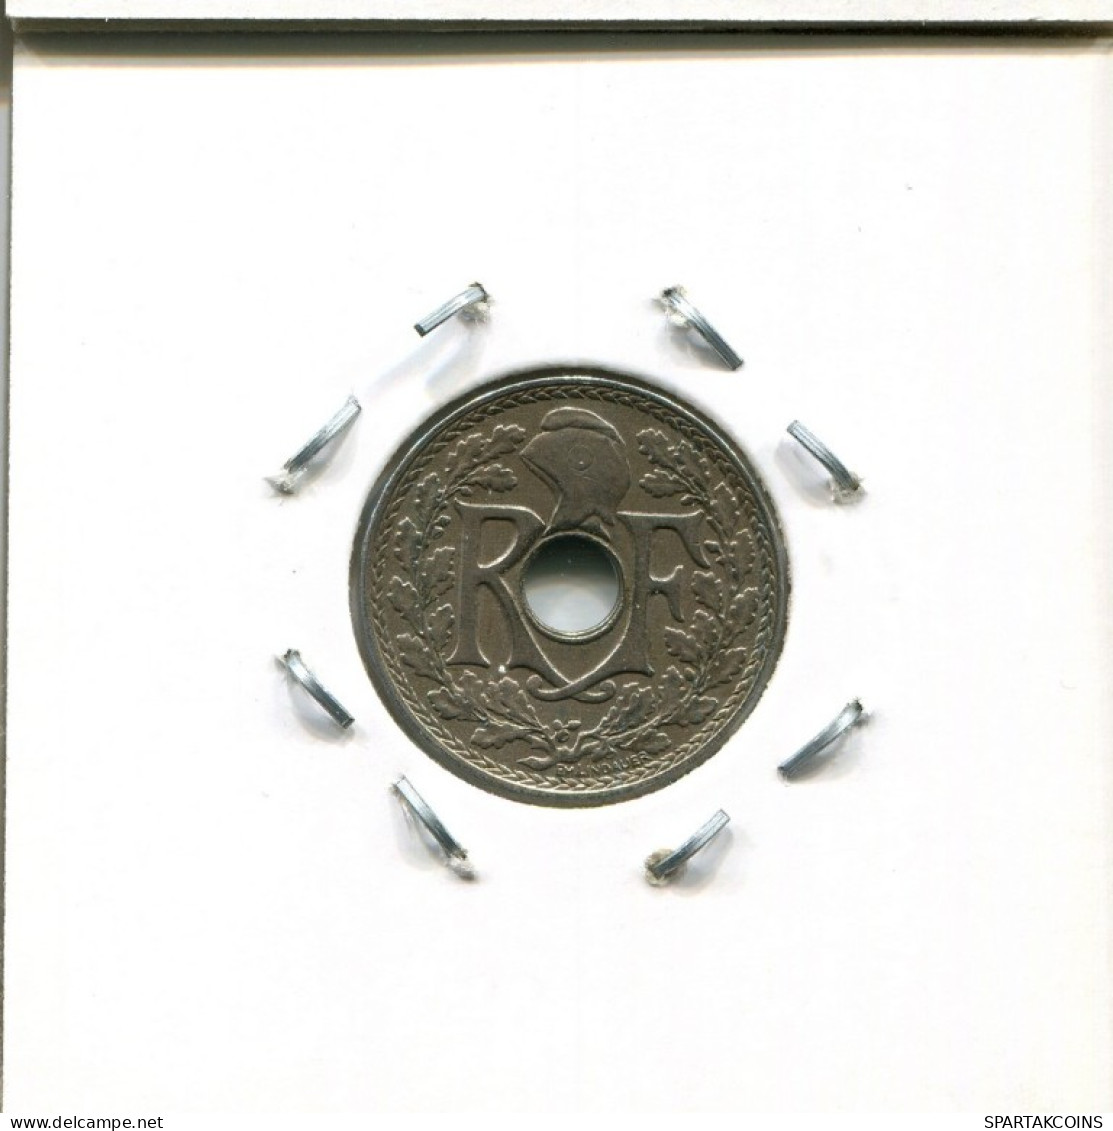 5 CENTIMES 1917 FRANCIA FRANCE Moneda #AM017.E.A - 5 Centimes